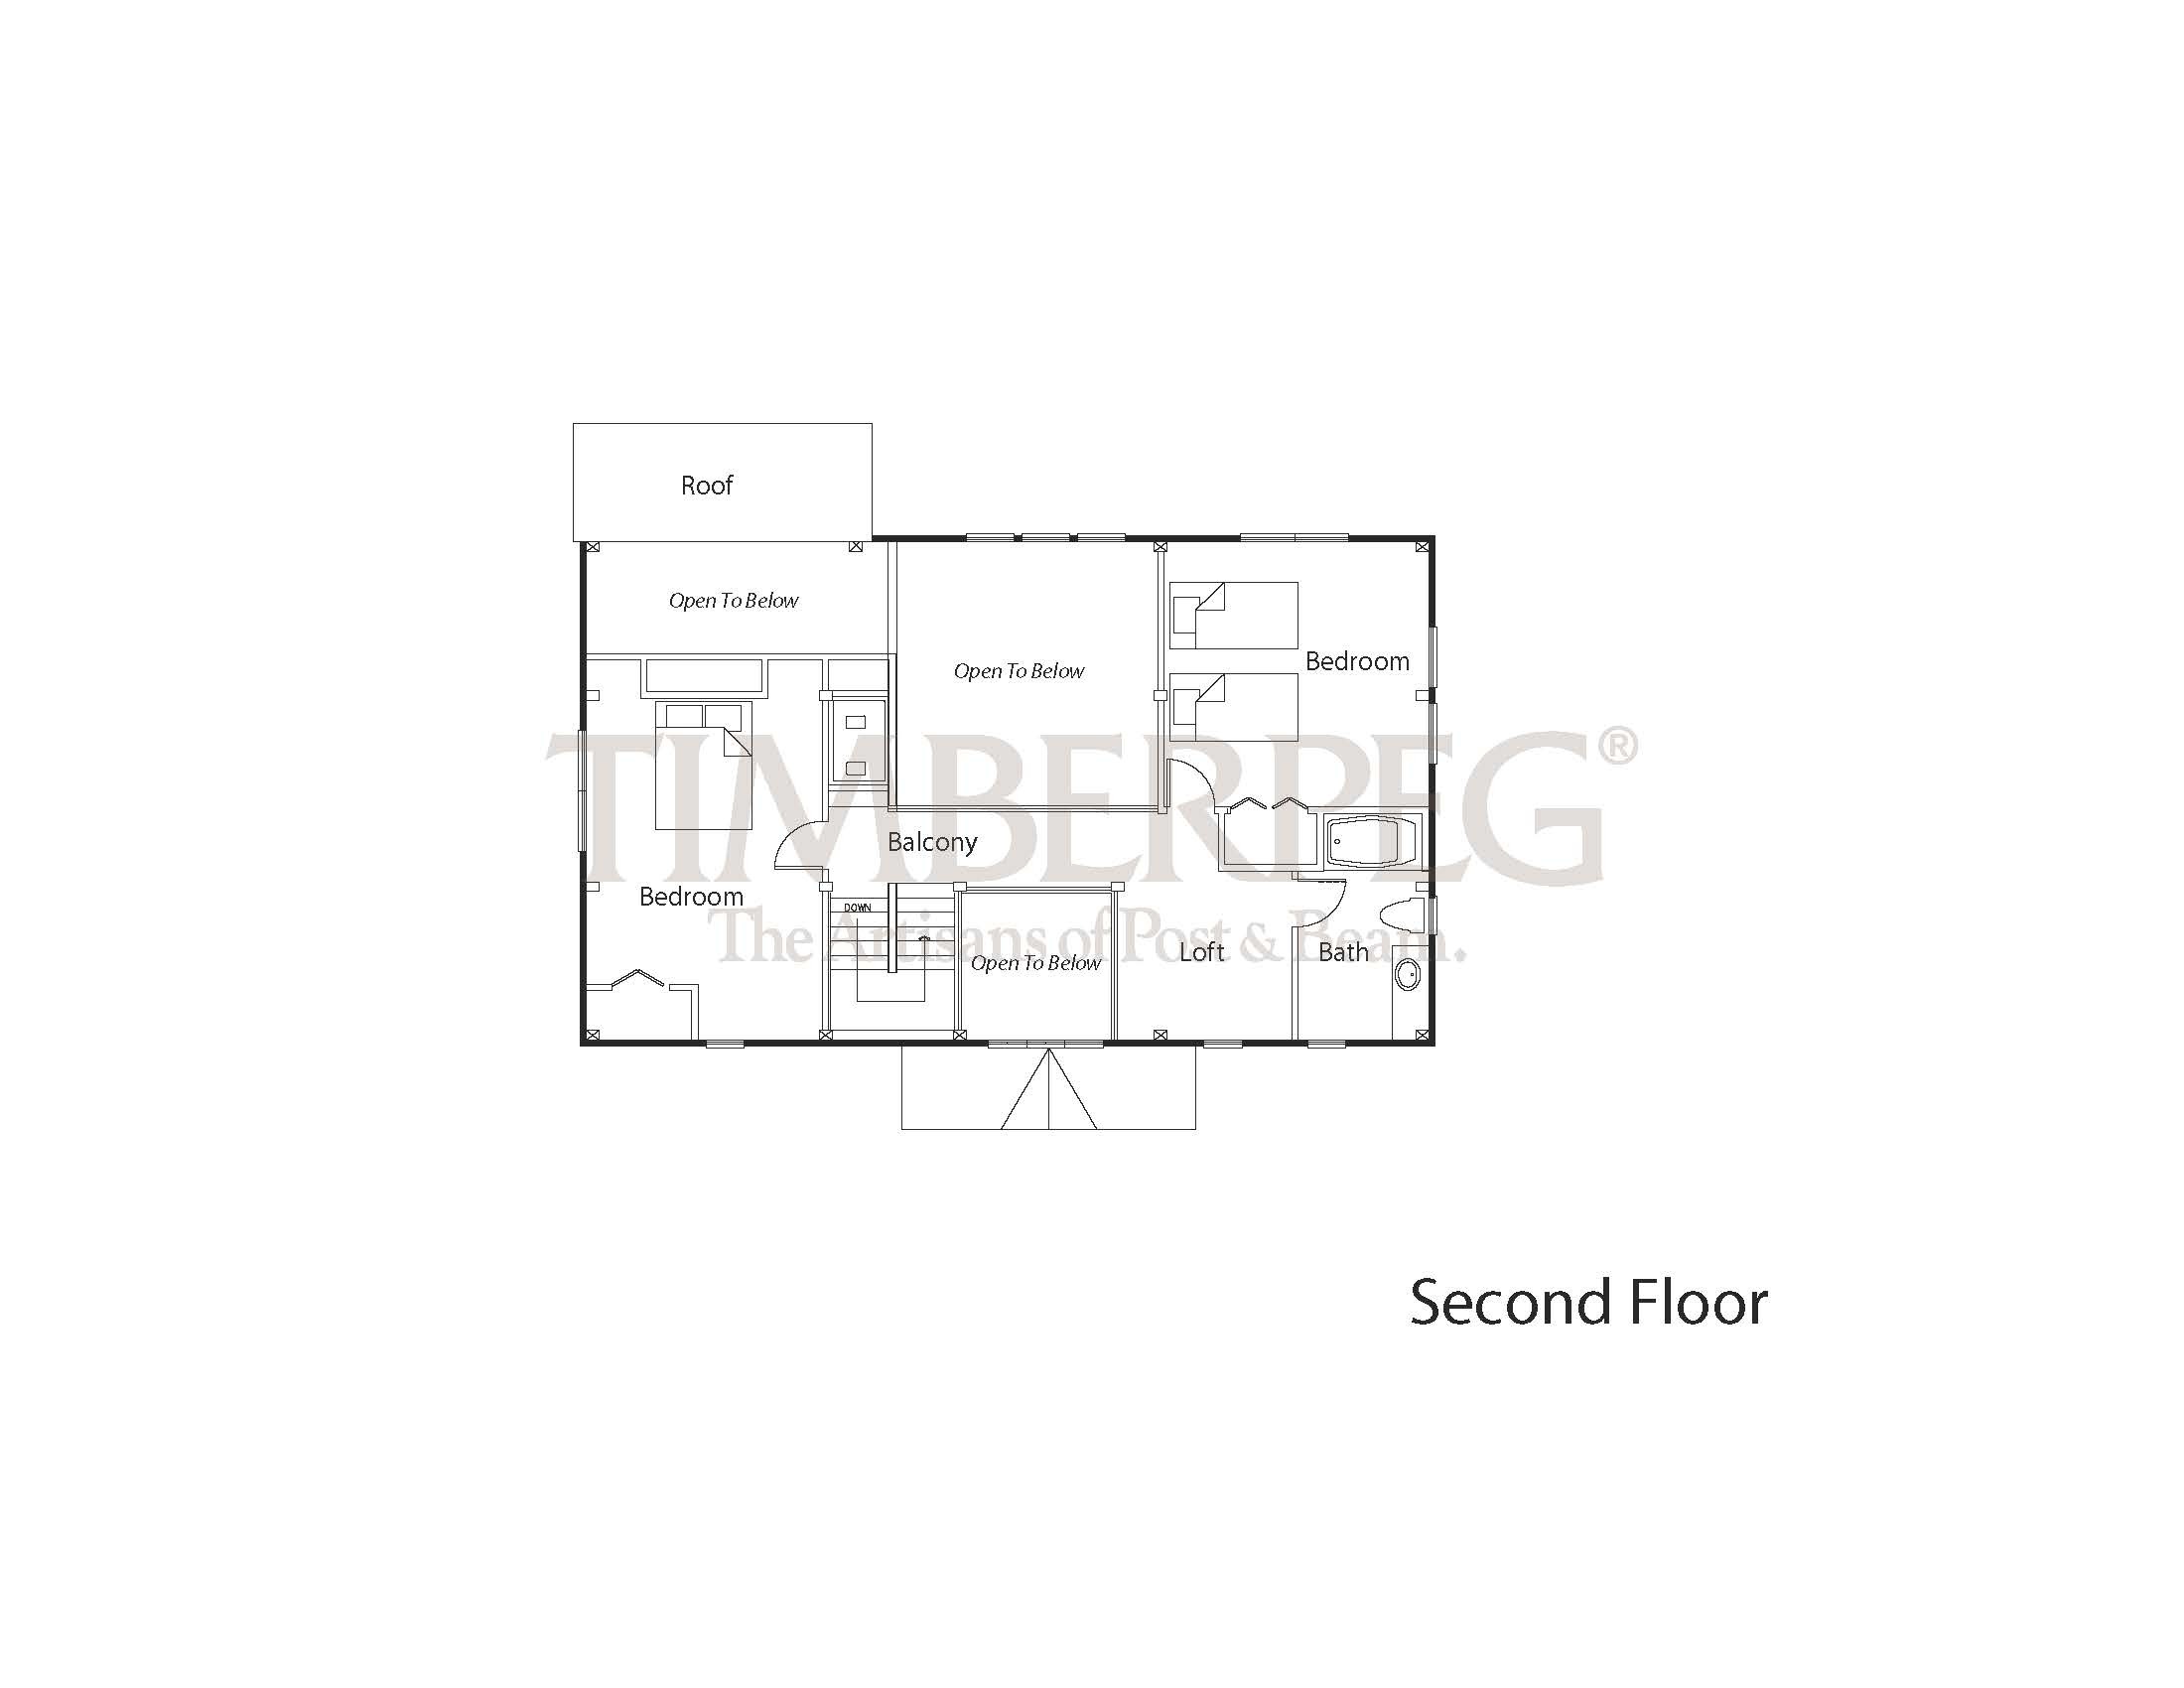 Tisbury 2000 second floor plan